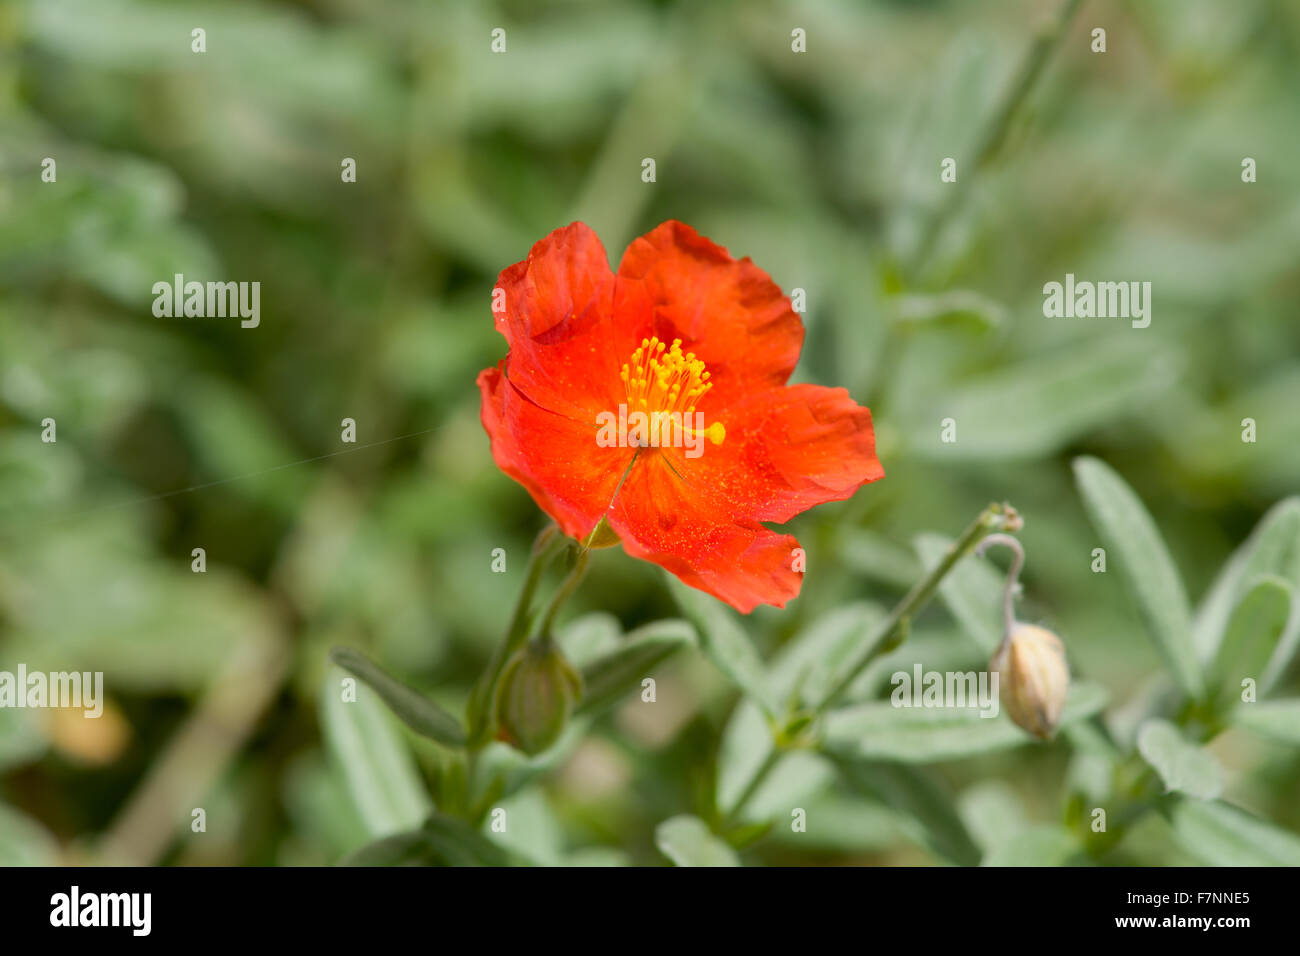 Helianthemum henfield flower in garden Stock Photo